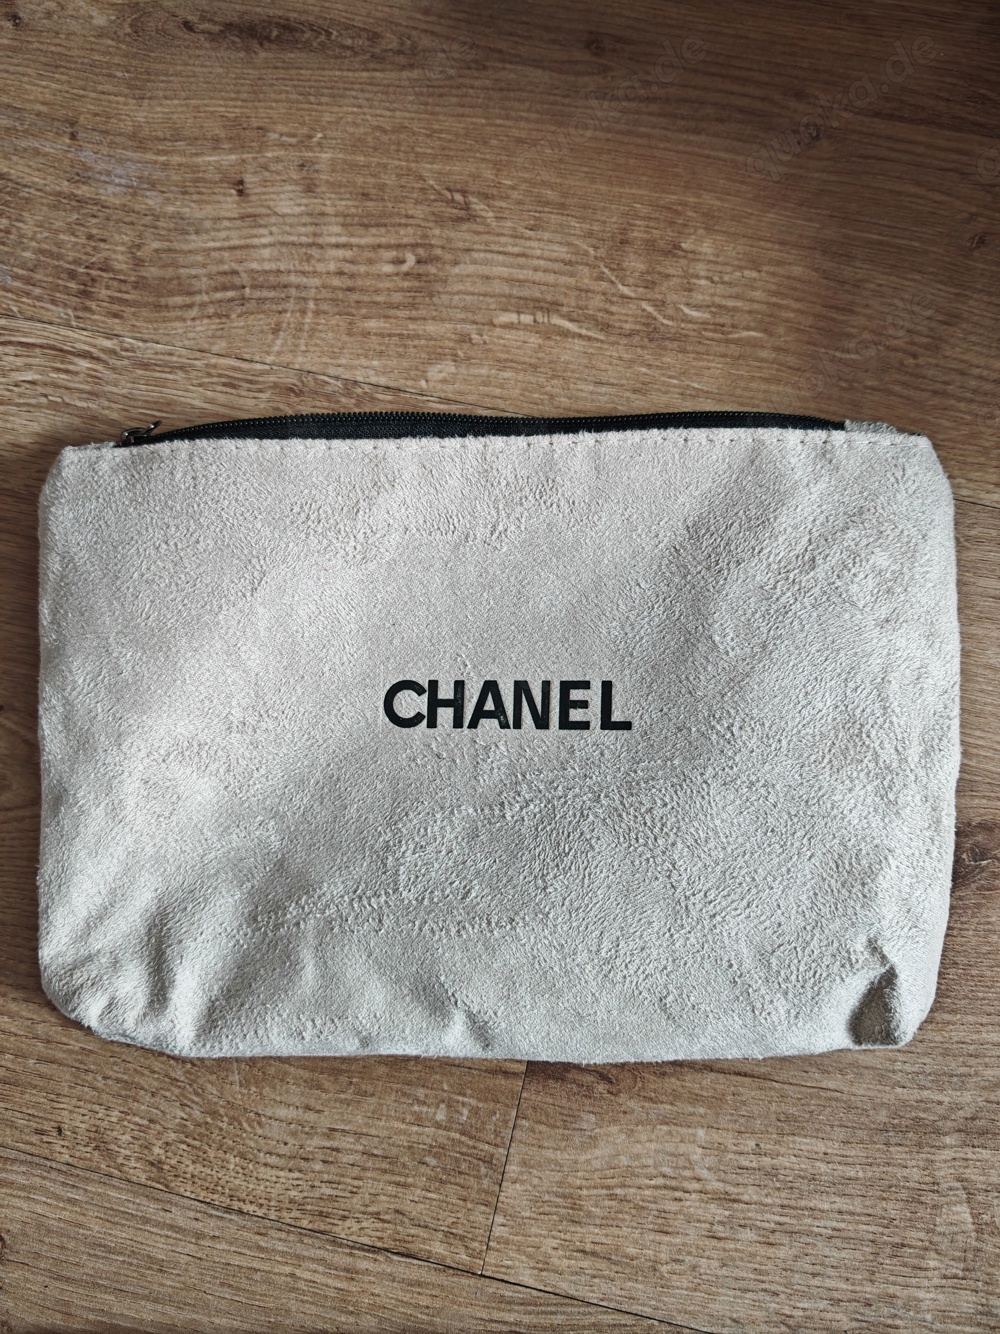 Chanel Kosmetik Tasche VIP Geschenk Bag Beauty Leder Tasche